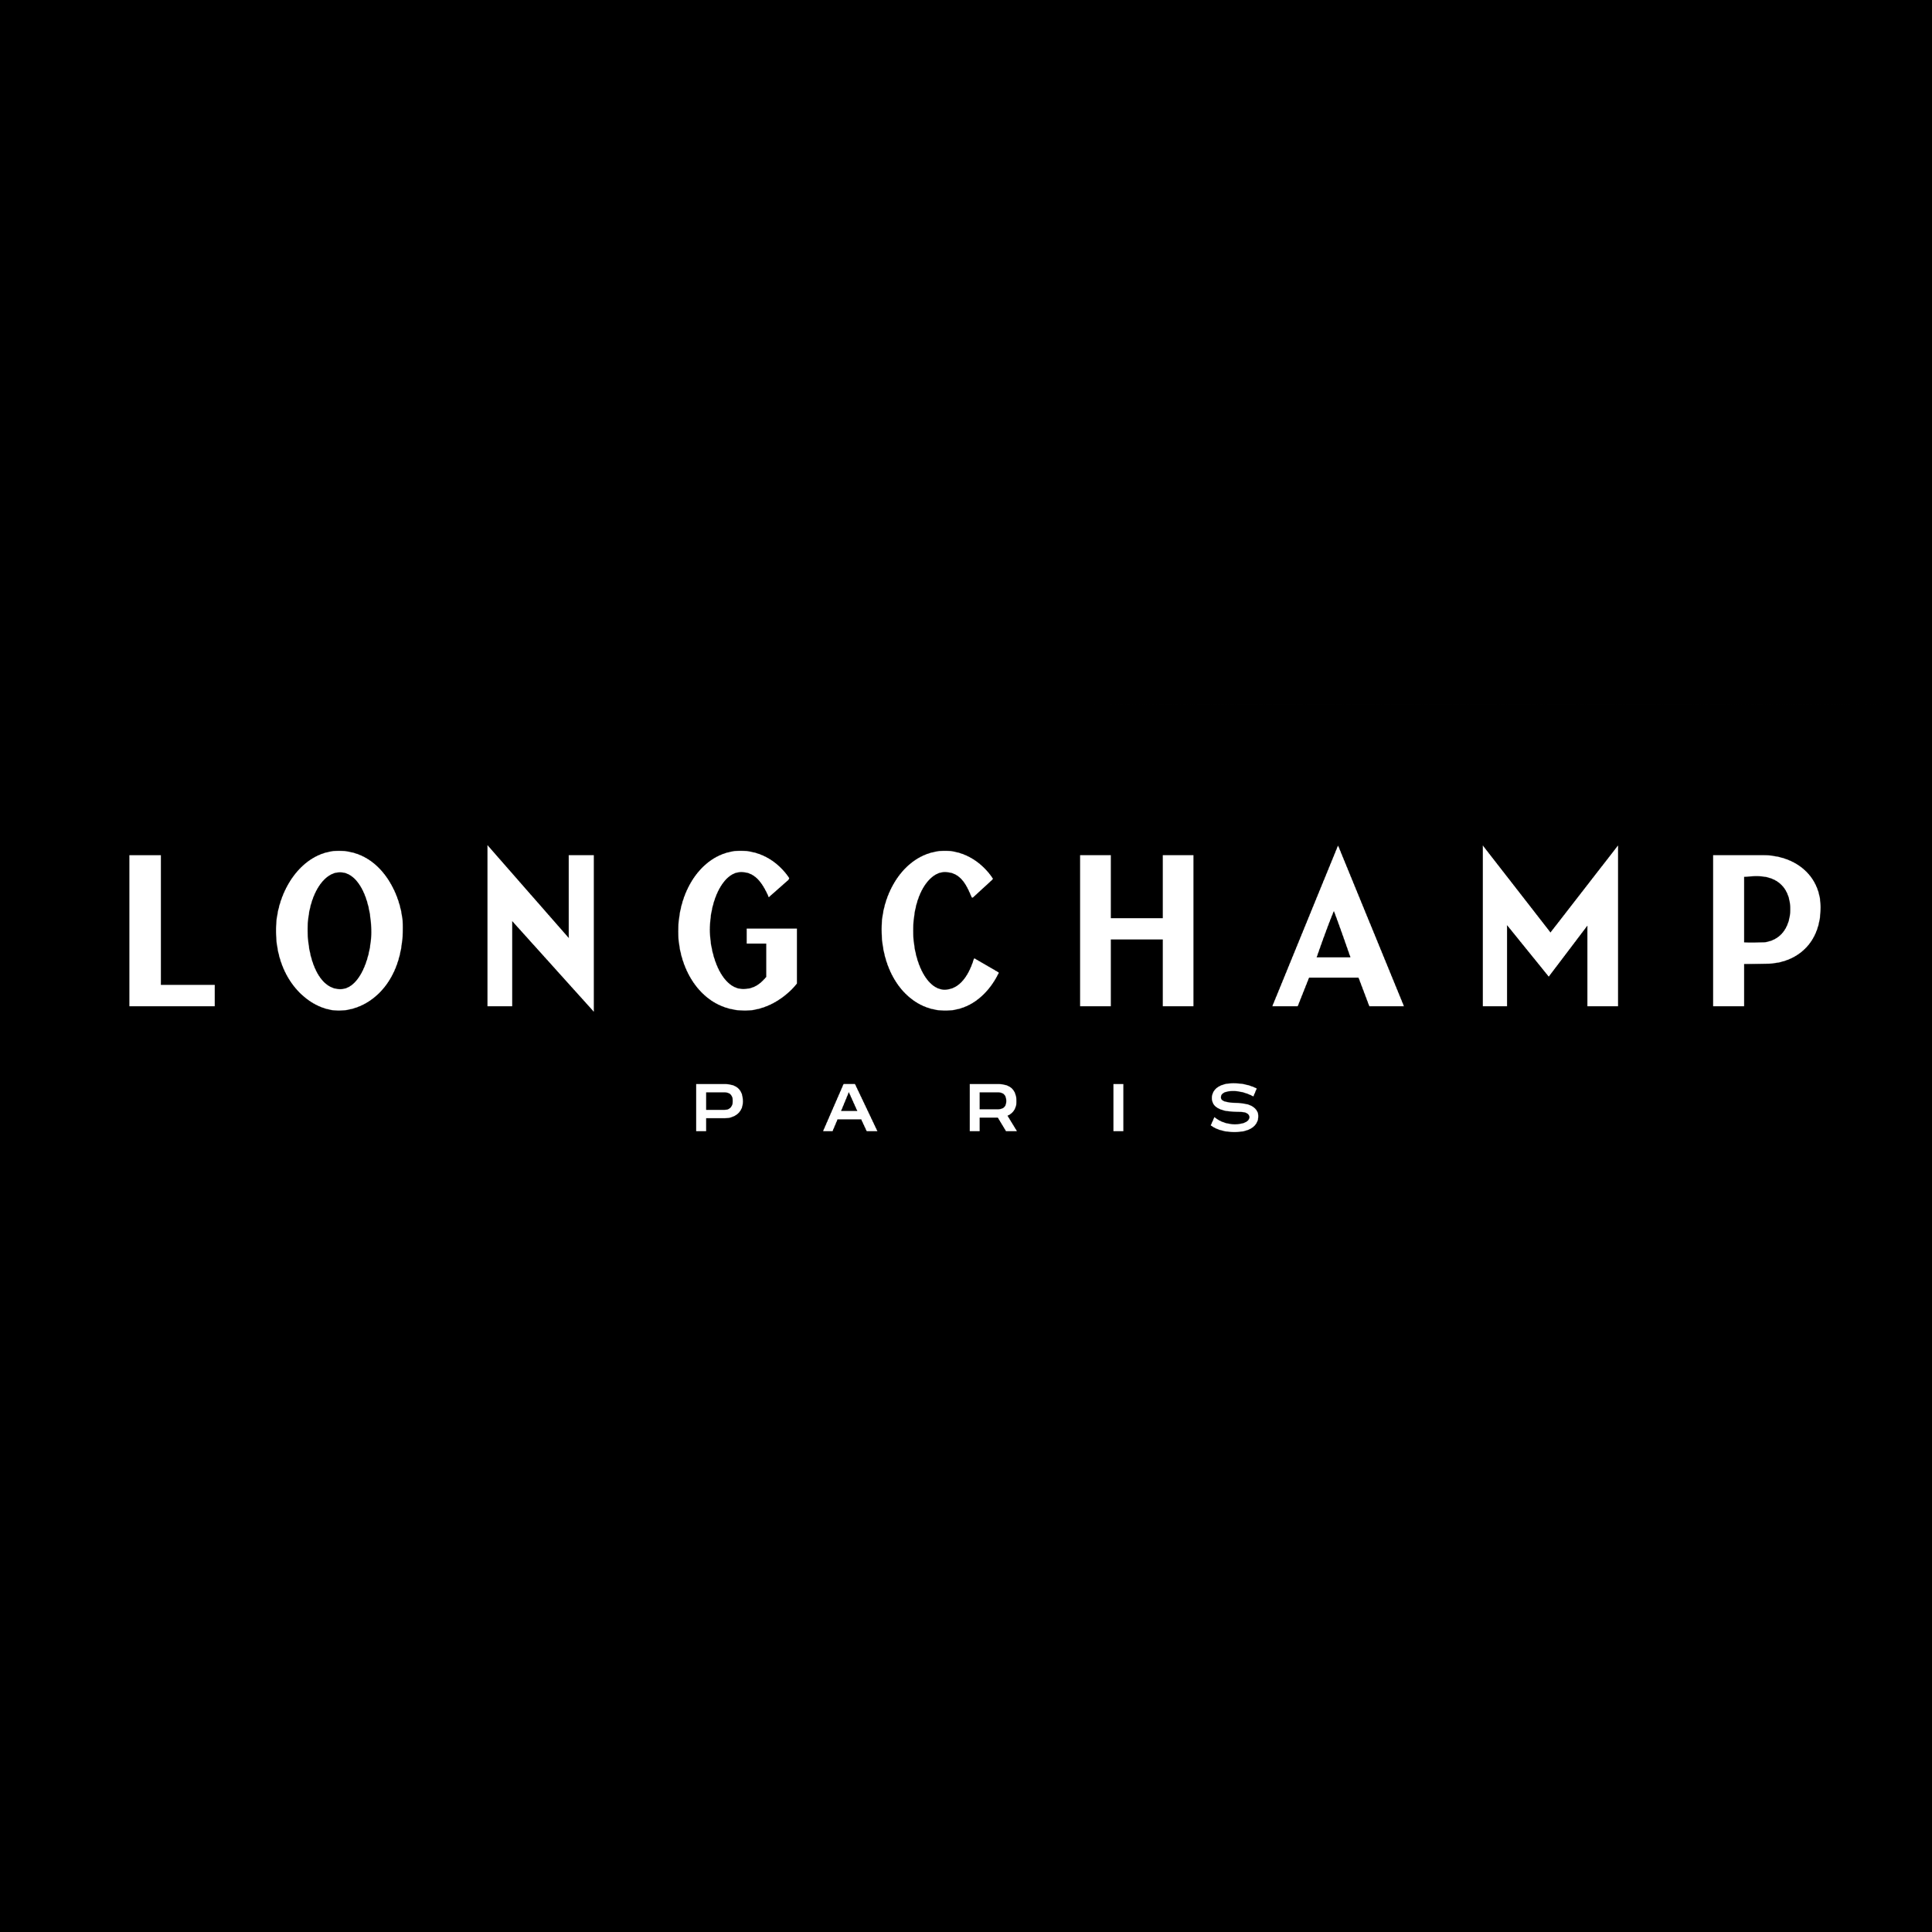 Longchamp Logos